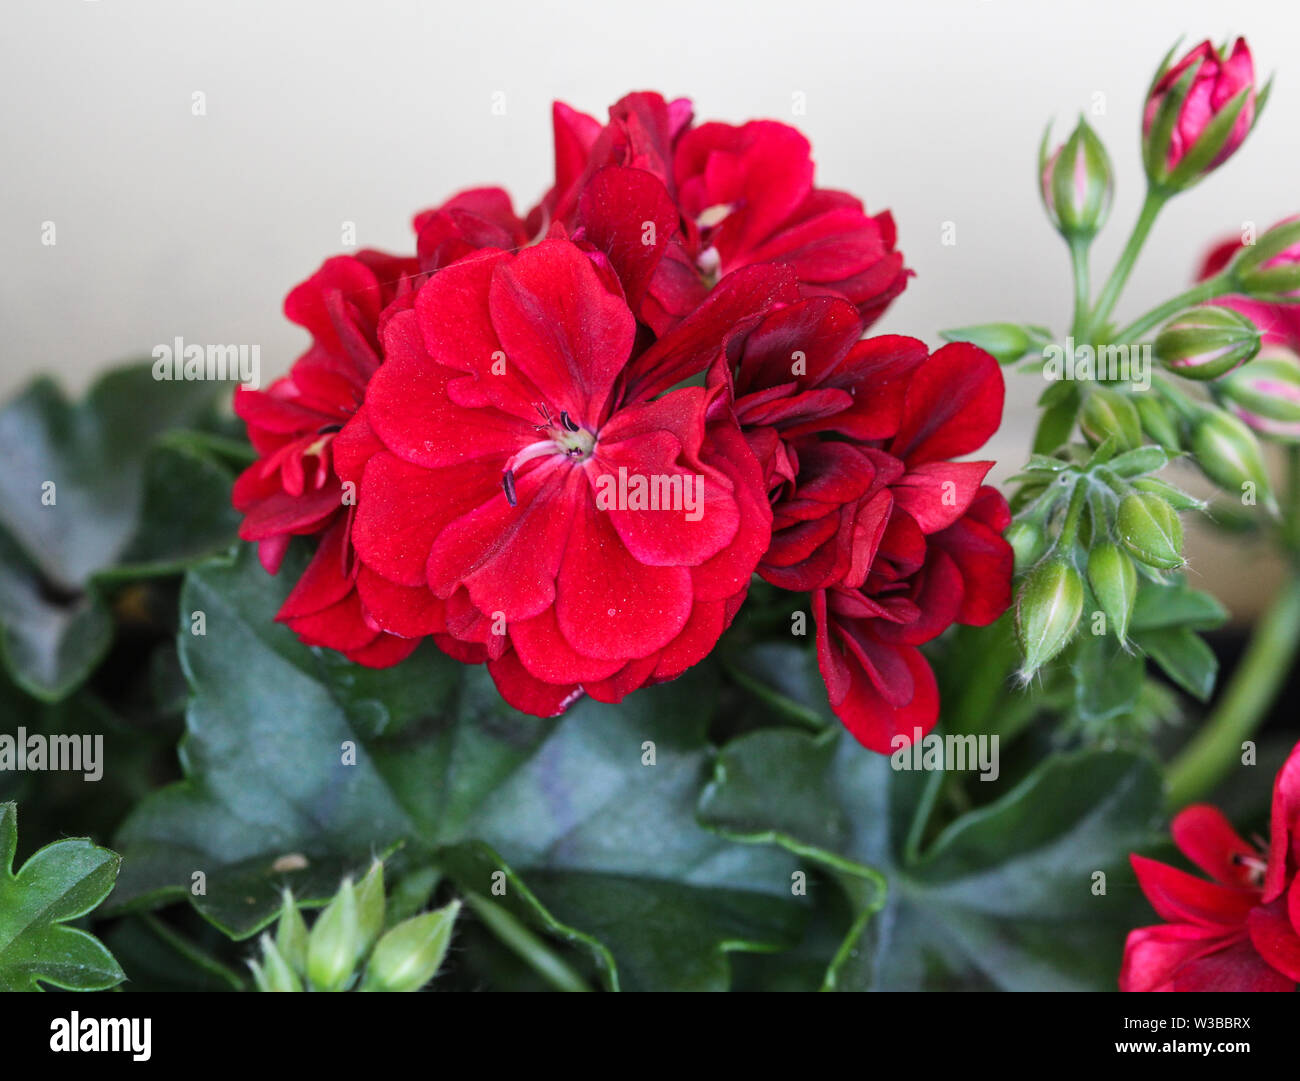 close up of Red Geraniums (Pelargonium x hortorum) in garden blooming Stock Photo